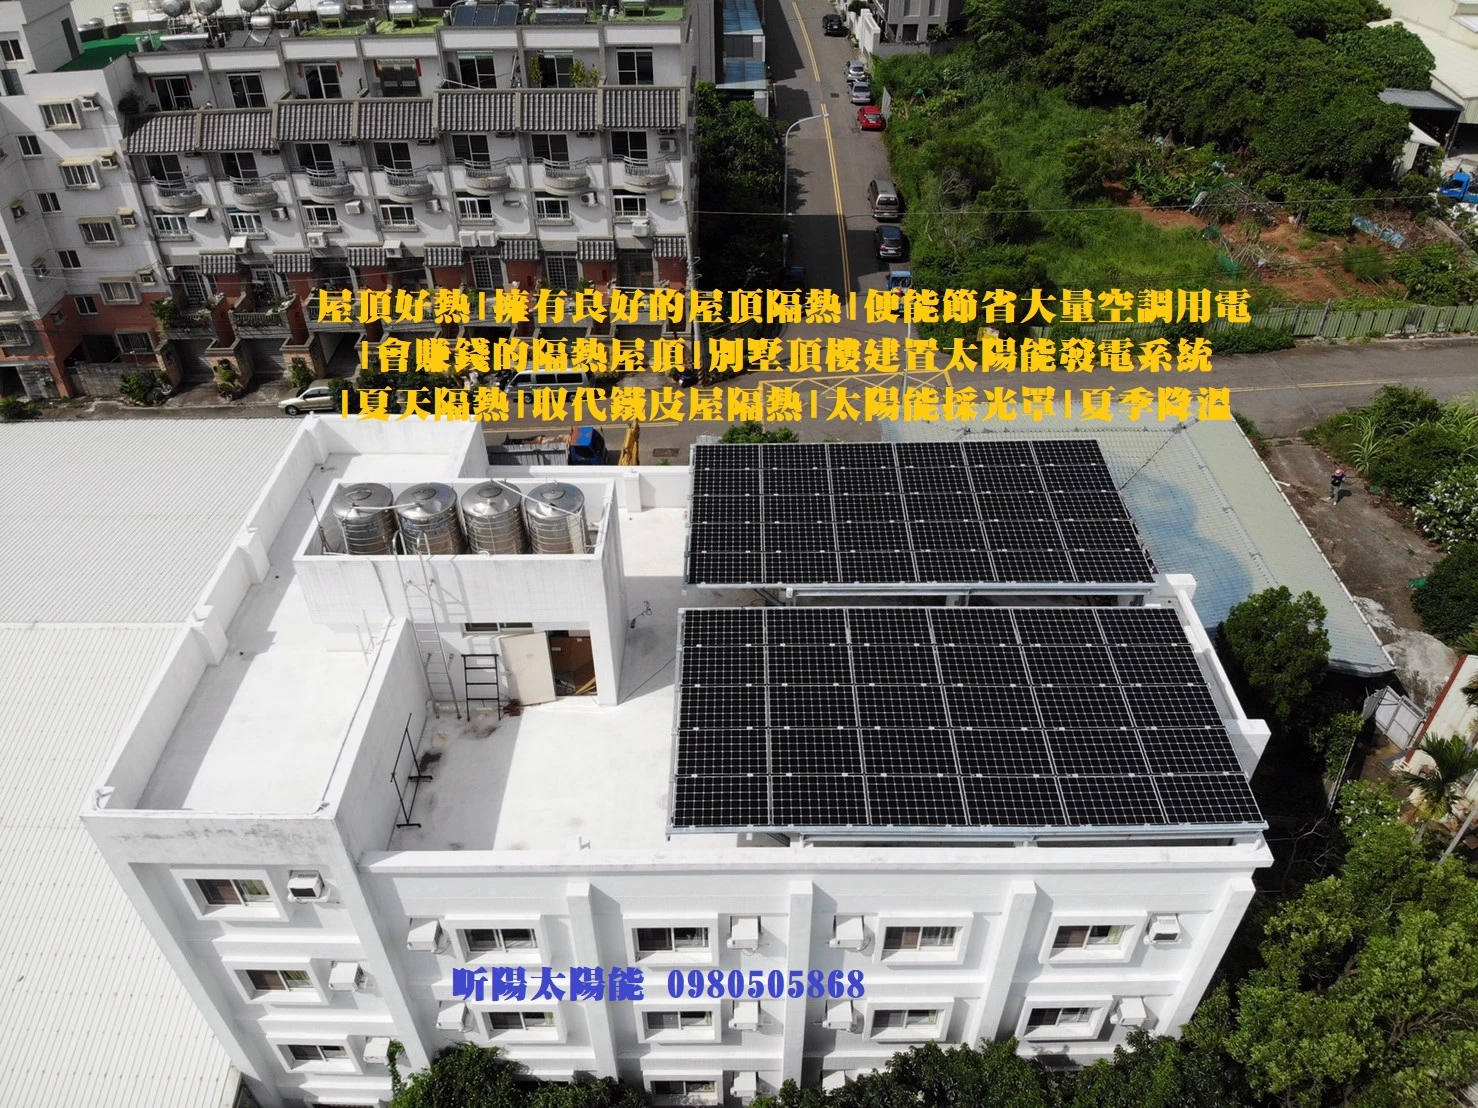 屋頂型太陽能發電|太陽能發電系統|太陽能電廠|solar|領航節能科技圖1